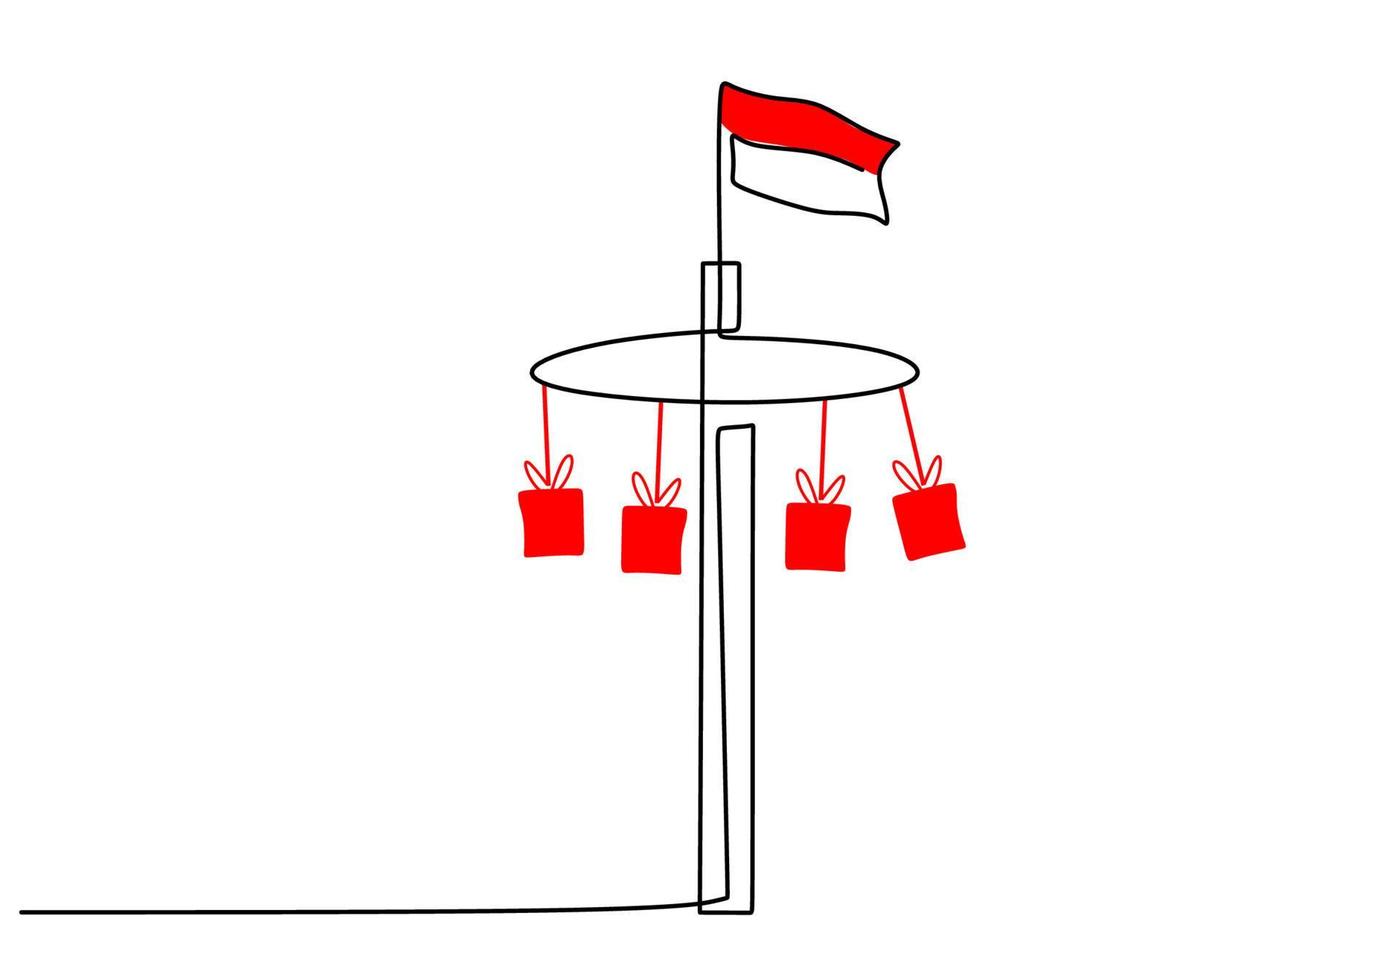 uno continuo singolo linea mano disegno di Indonesia bandiera vettore